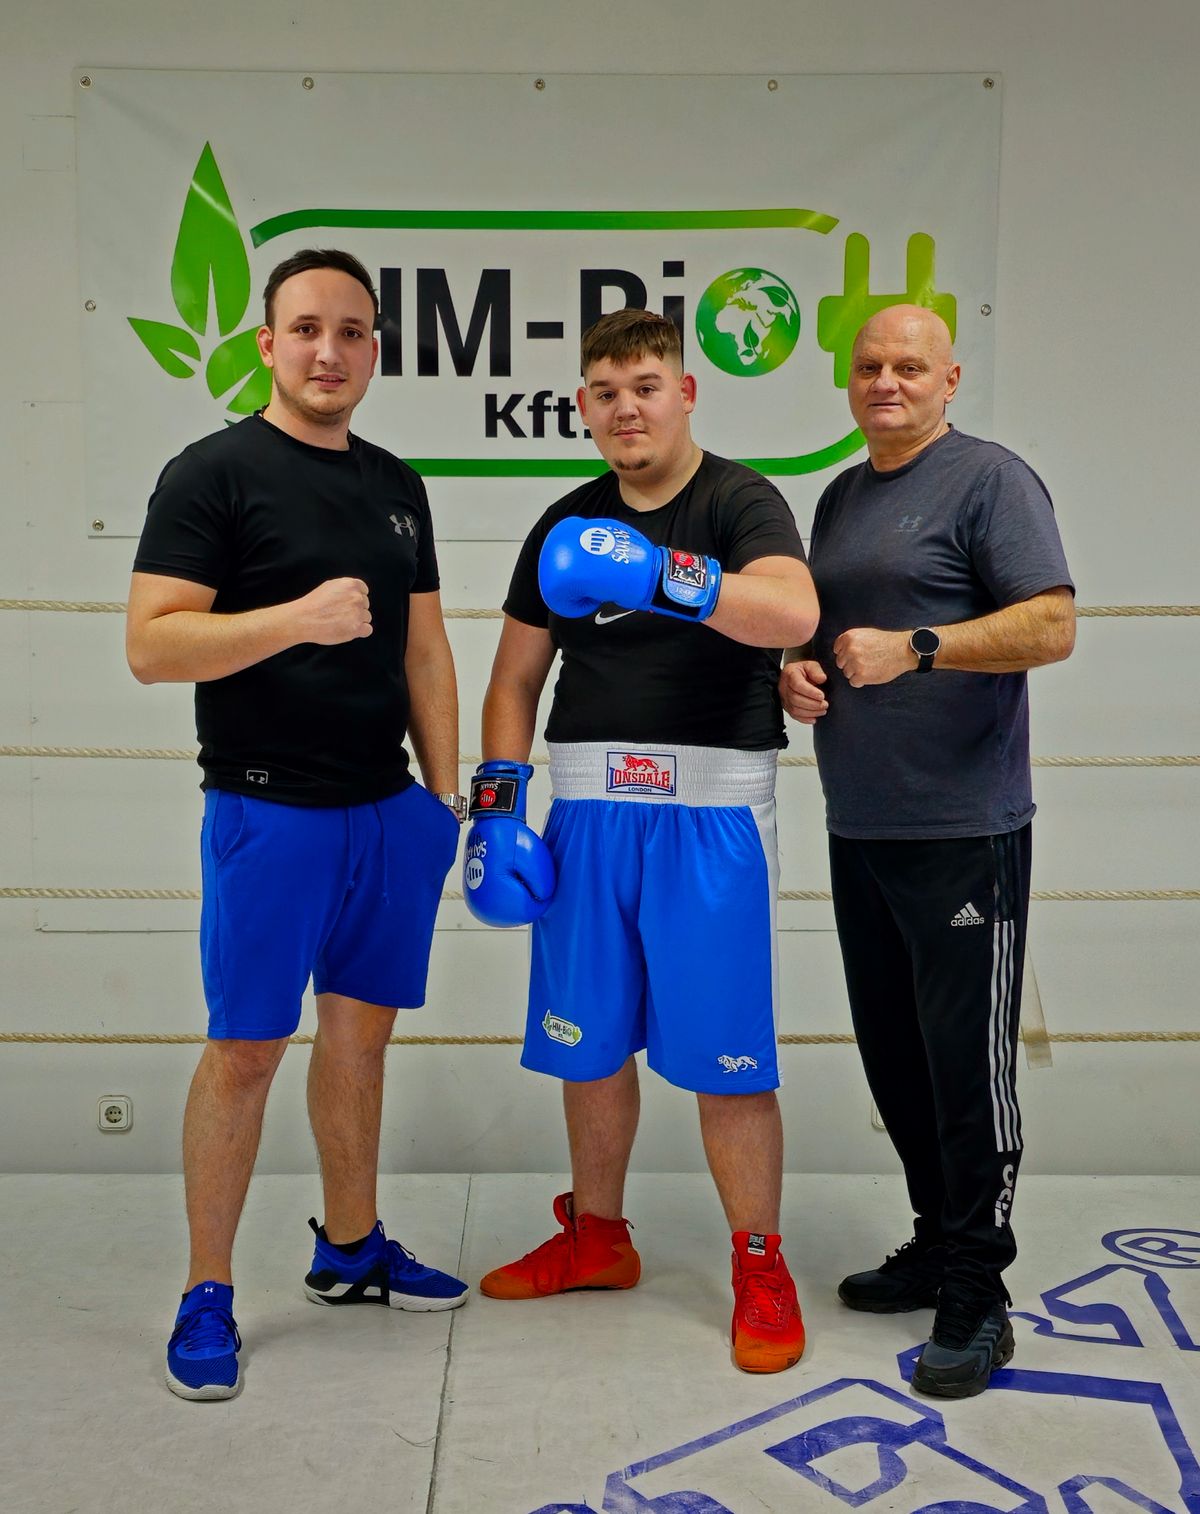 Az Énekes István Ifjúsági Ökölvívó Emlékversenyen +92 kilós kategóriában indult az ajkai Boxer SE versenyzője, Tóth Levente.